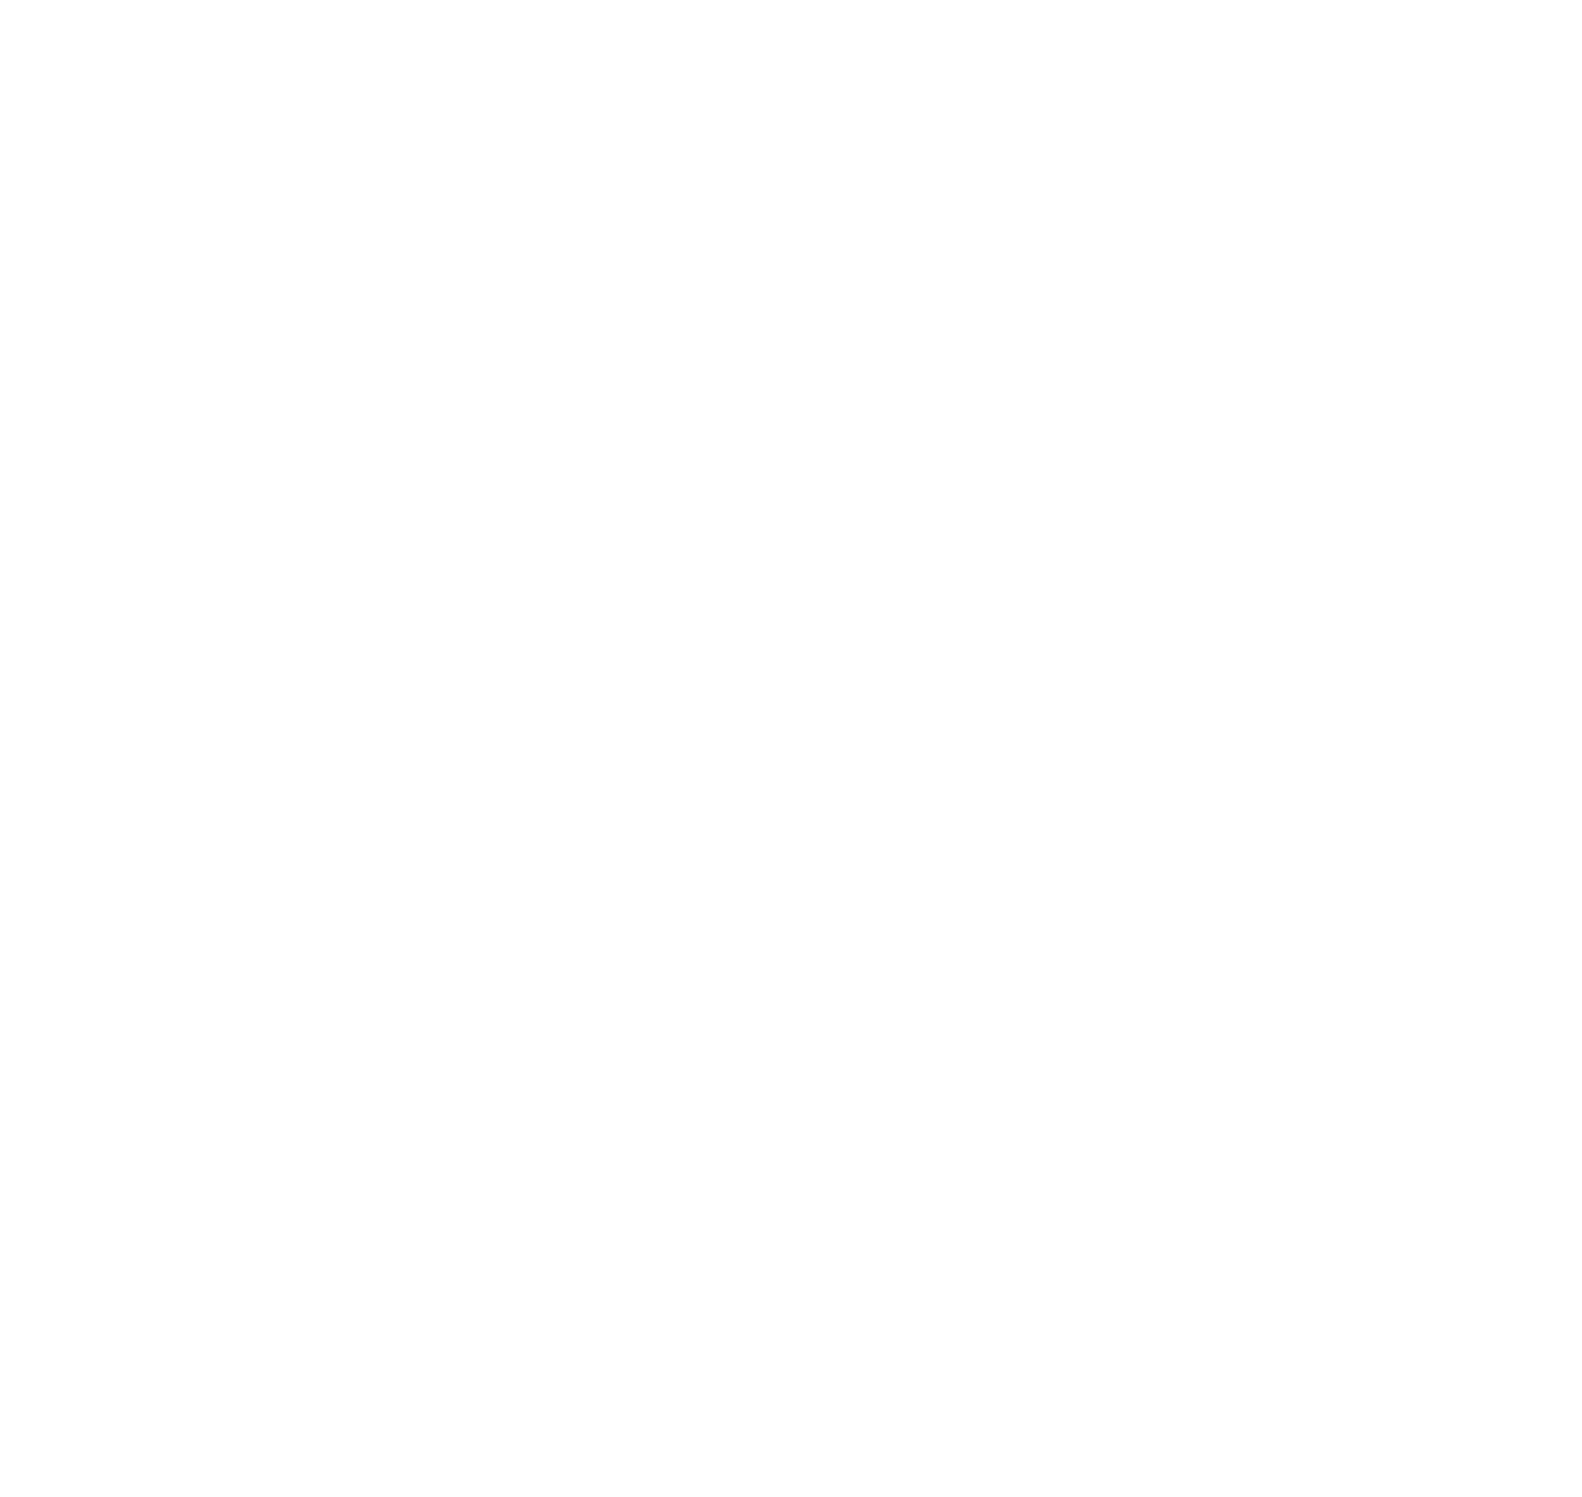 Banco Santander Brasil logo pour fonds sombres (PNG transparent)